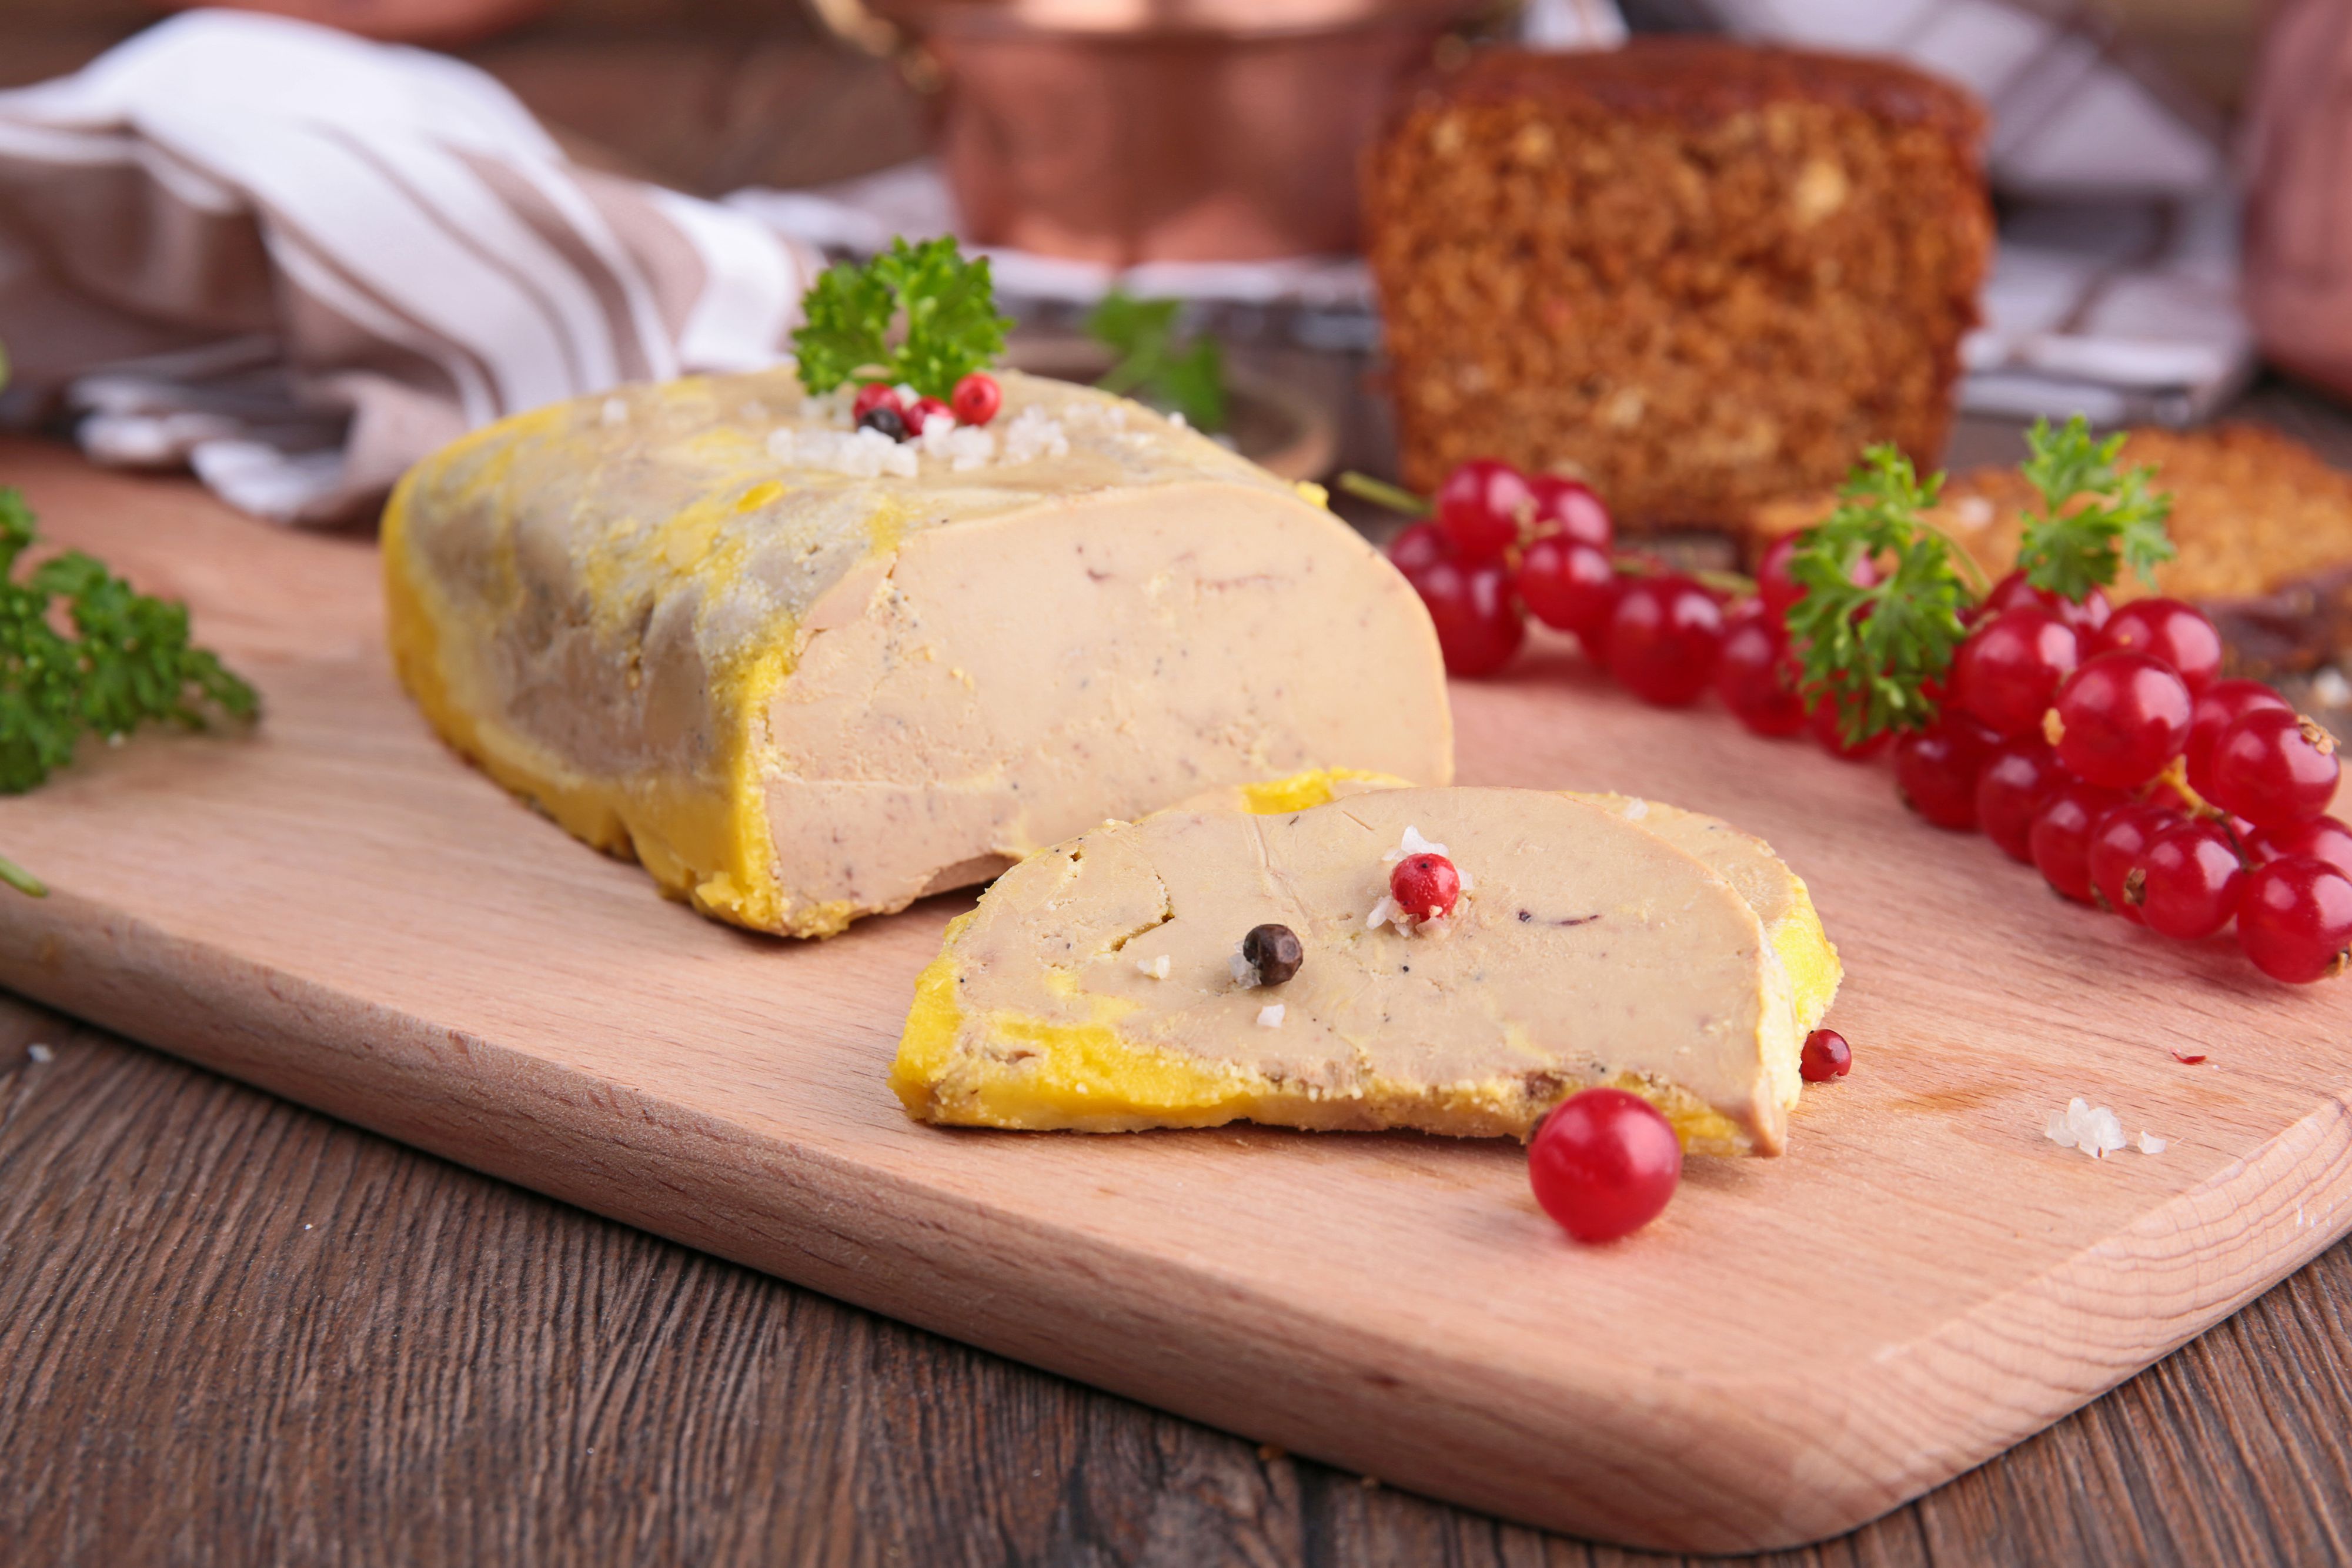 Fourrure et foie gras, le Conseil fédéral avance à petits pas